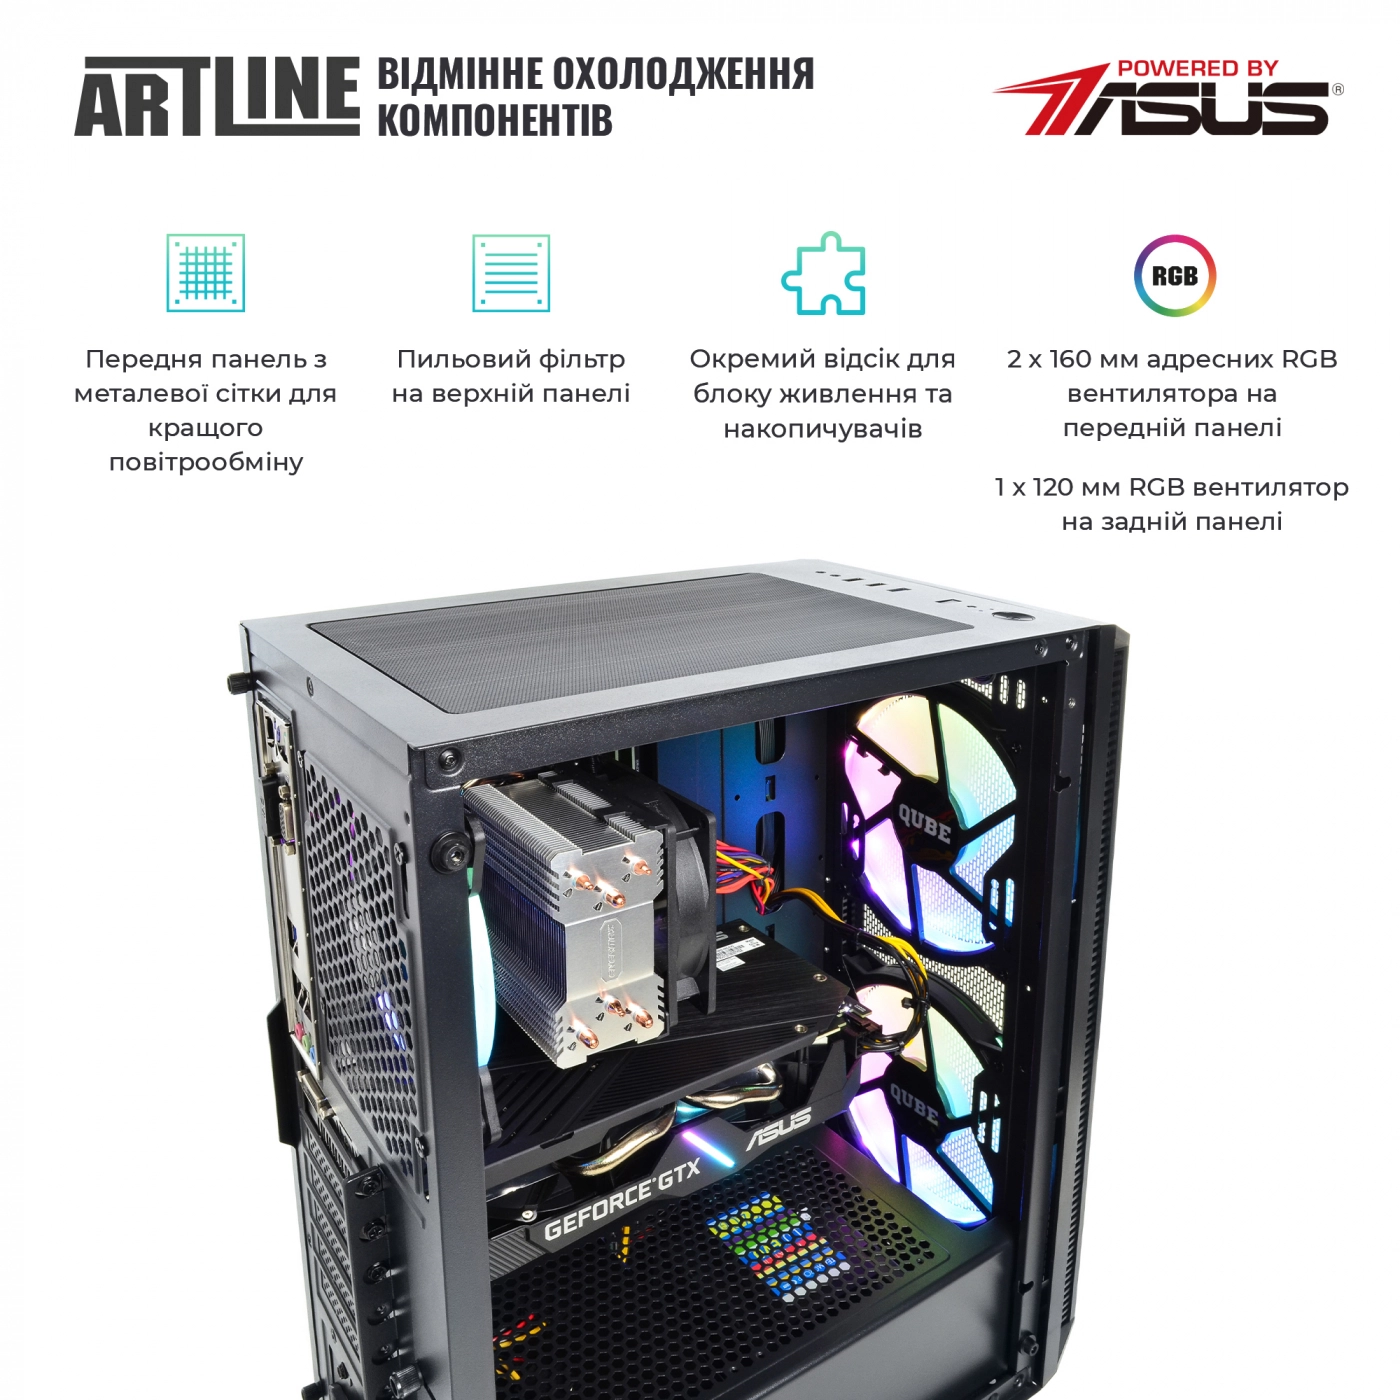 Купить Компьютер ARTLINE Gaming X65v31 - фото 2